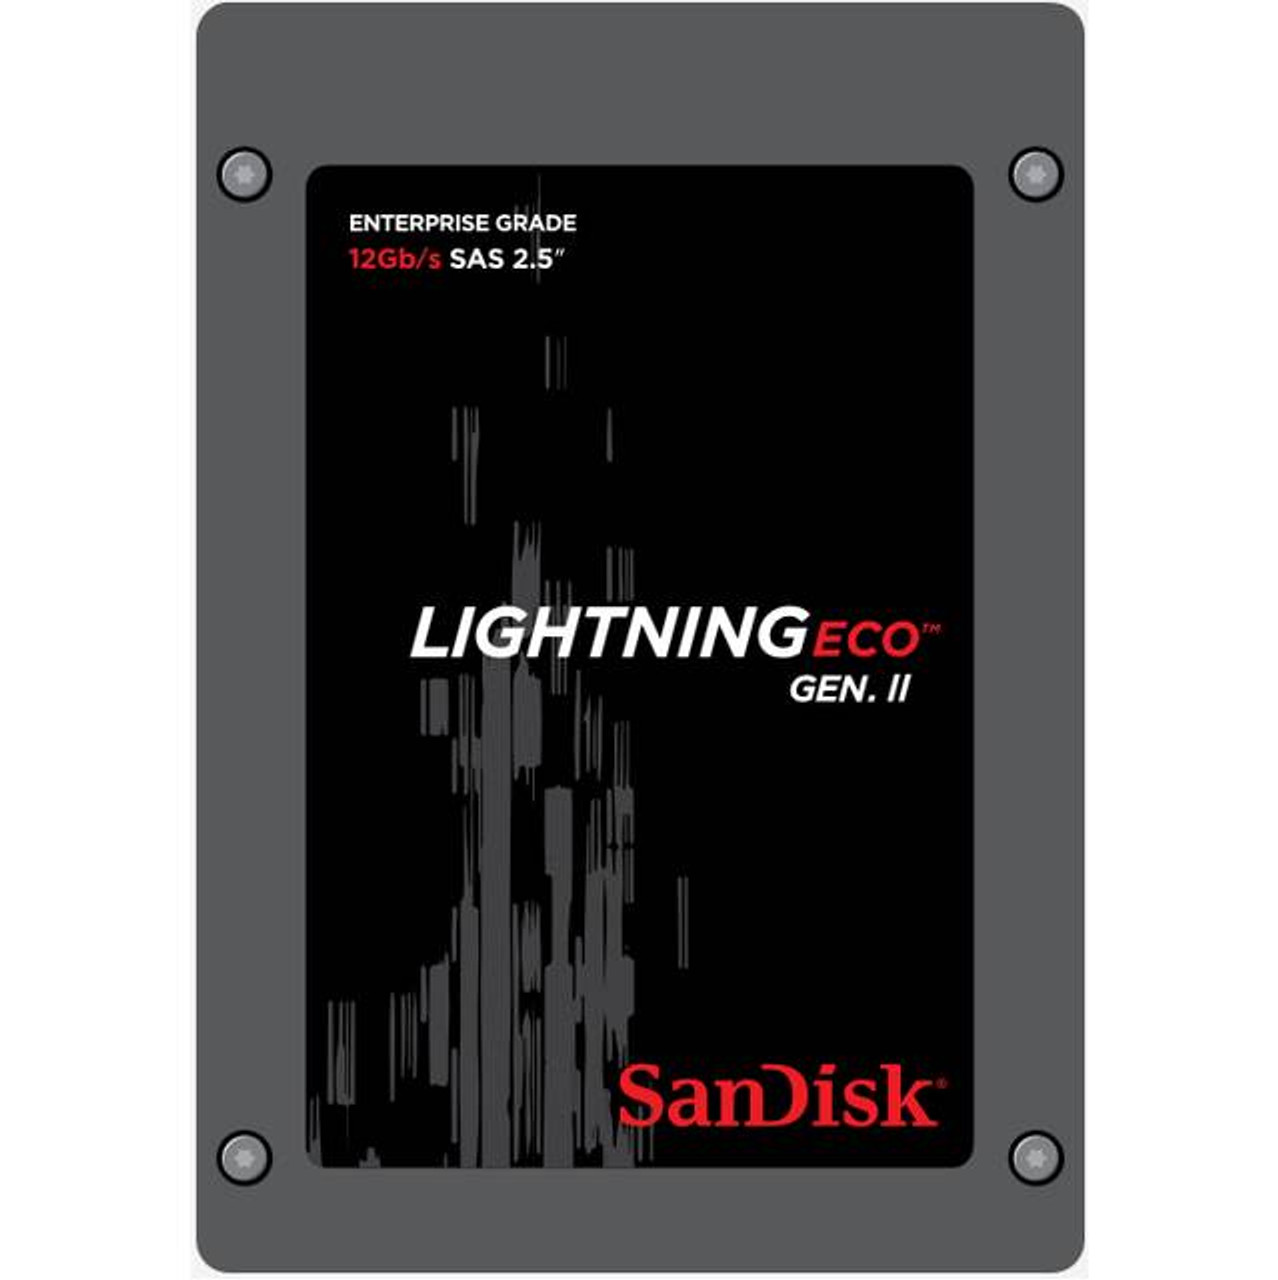 SanDisk Lightning Eco Gen. II SDLTODKR-800G-5CA1 800GB 2.5 inch SAS3 Solid State Drive (MLC)